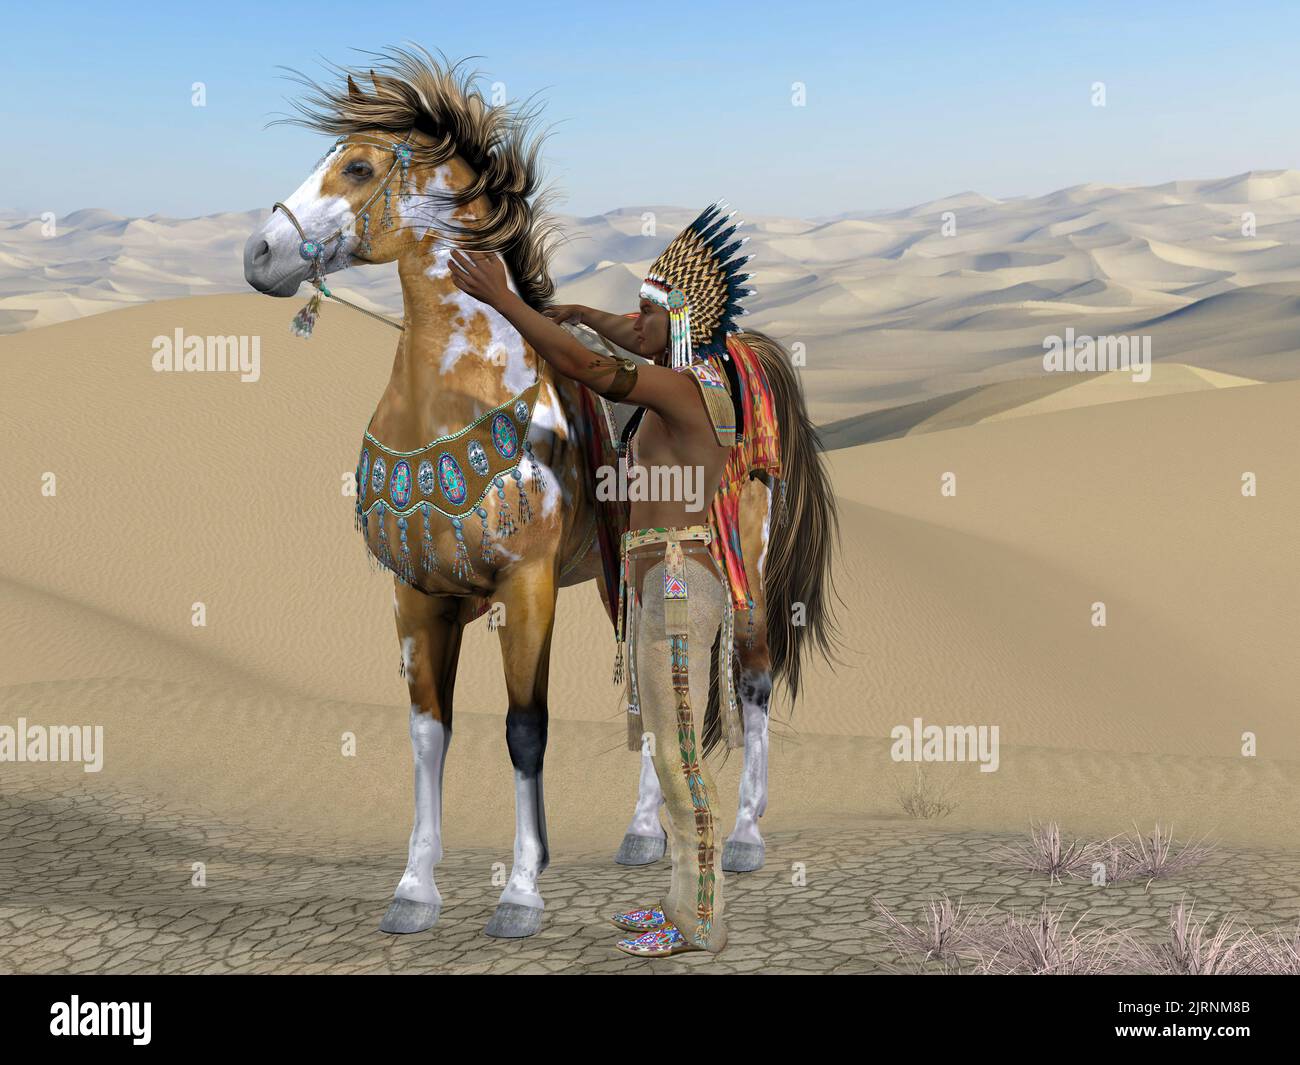 Apprivoiser le cheval indien - un chef indien américain tente de calmer un cheval sauvage pour qu'il puisse le faire. Banque D'Images